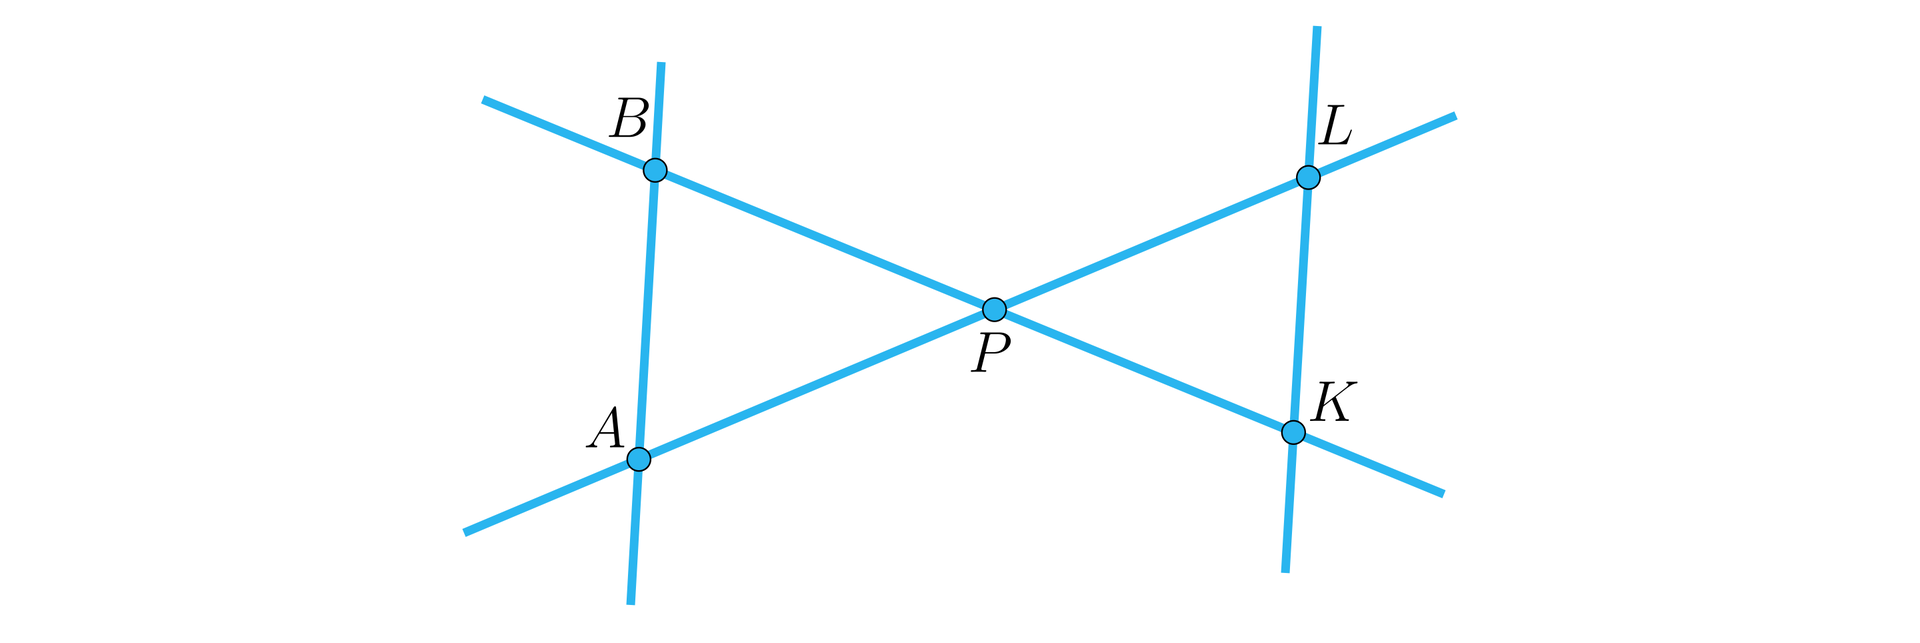 Ilustracja przedstawia cztery proste. Dwie ukośne proste przecinają się w punkcie P i układają się w kształt spłaszczonej litery X. Lewa pionowa prosta przecina  pierwszą ukośną prostą w punkcie B i poniżej drugą prostą w punkcie A. Druga pionowa prosta przecina jedną prostą w punkcie L, a drugą w punkcie K. Mamy więc prostą biegnącą od górnego lewego rogu ilustracji do dolnego prawego. Prosta zawiera punkty B P K. Mamy również prostą biegnącą z lewego dolnego rogu ilustracji do górnego prawego i na tej prostej znajdują się punkty A P L.